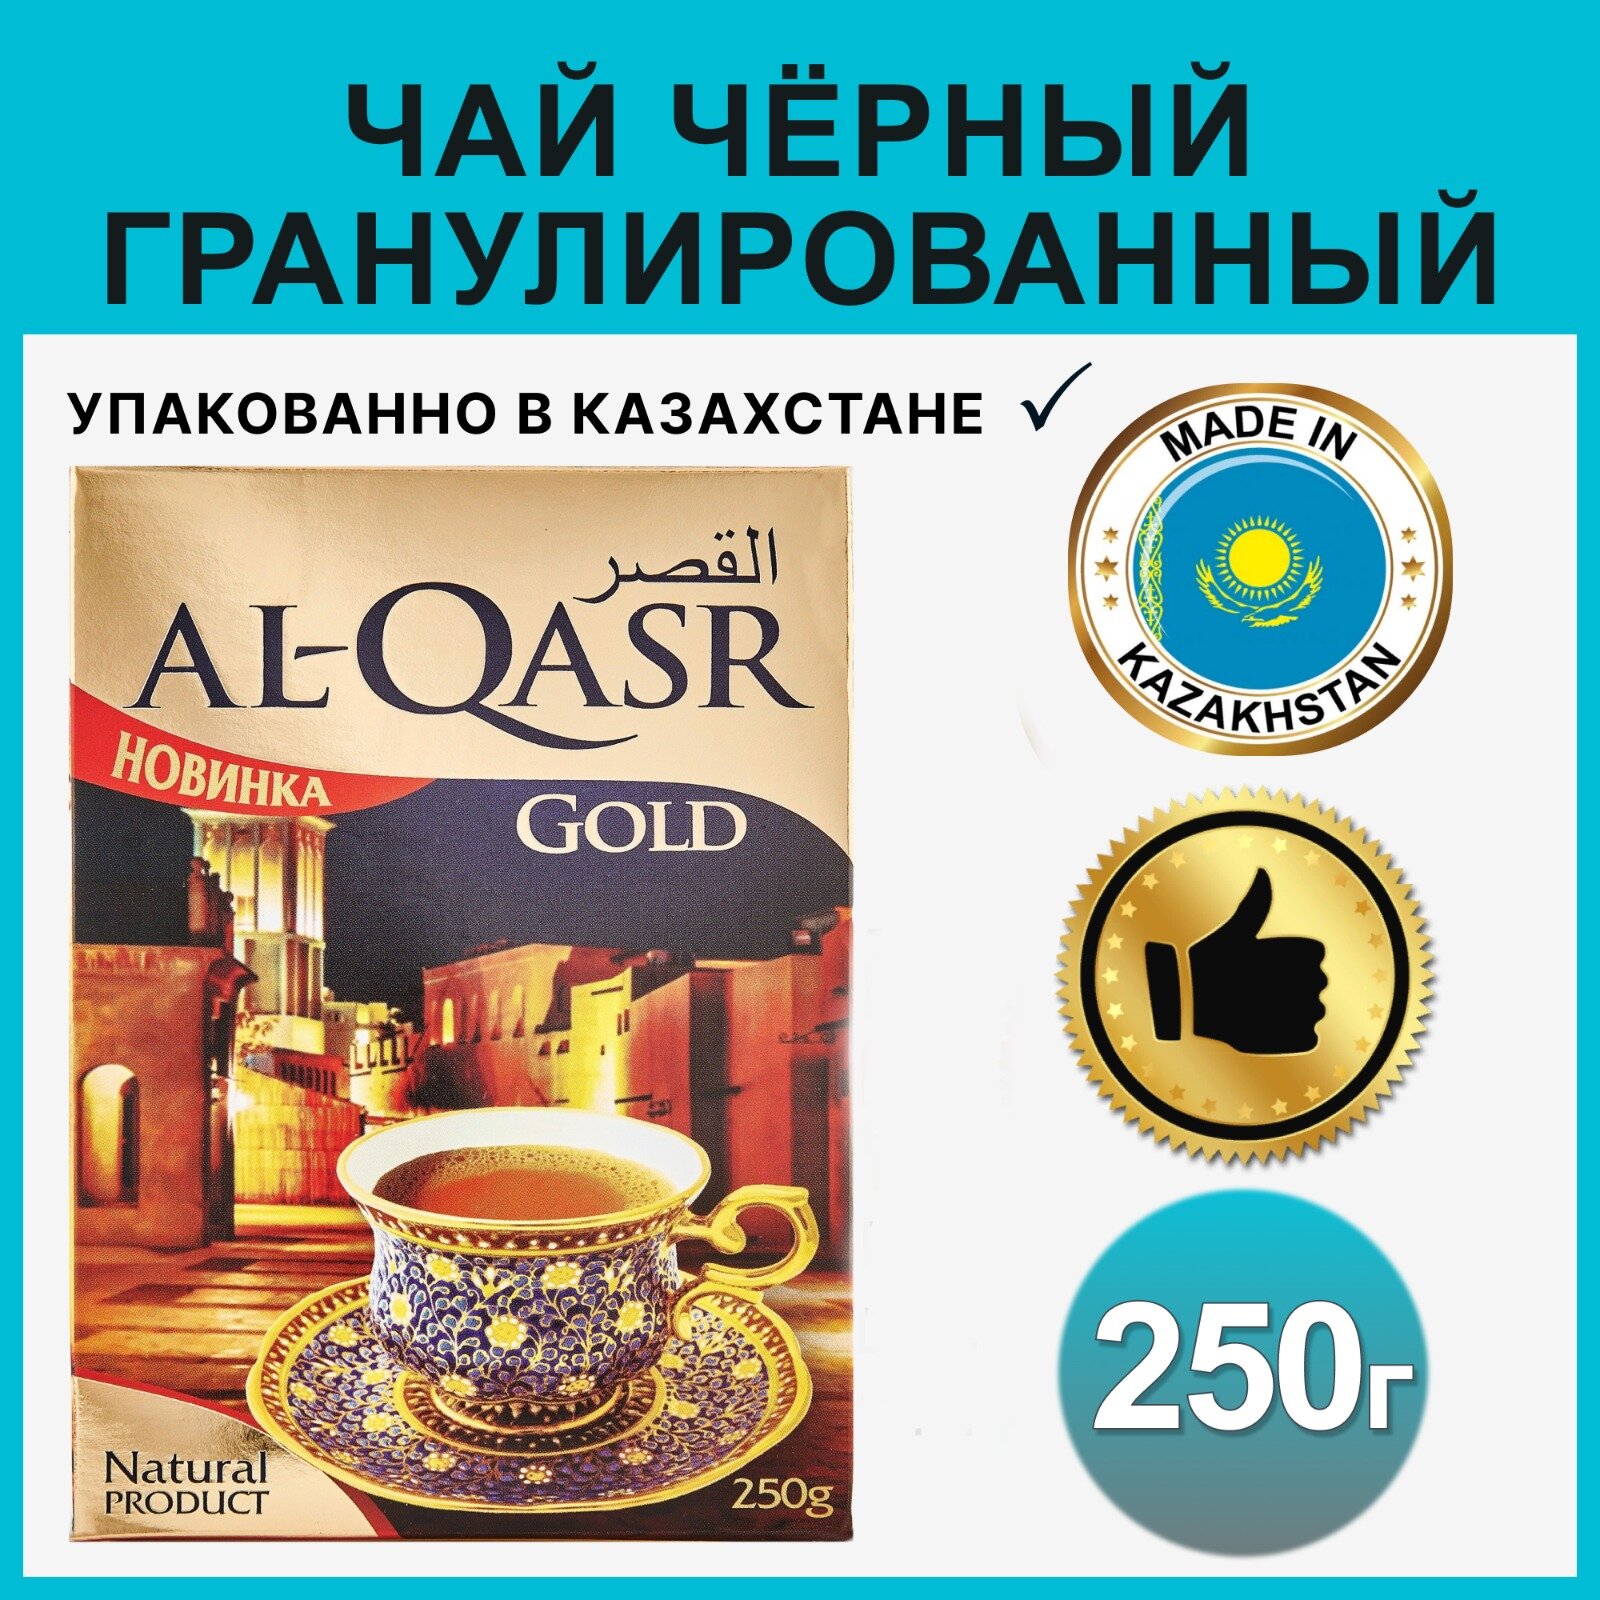 Чай AL-QASR черный гранулированный, 250 грамм